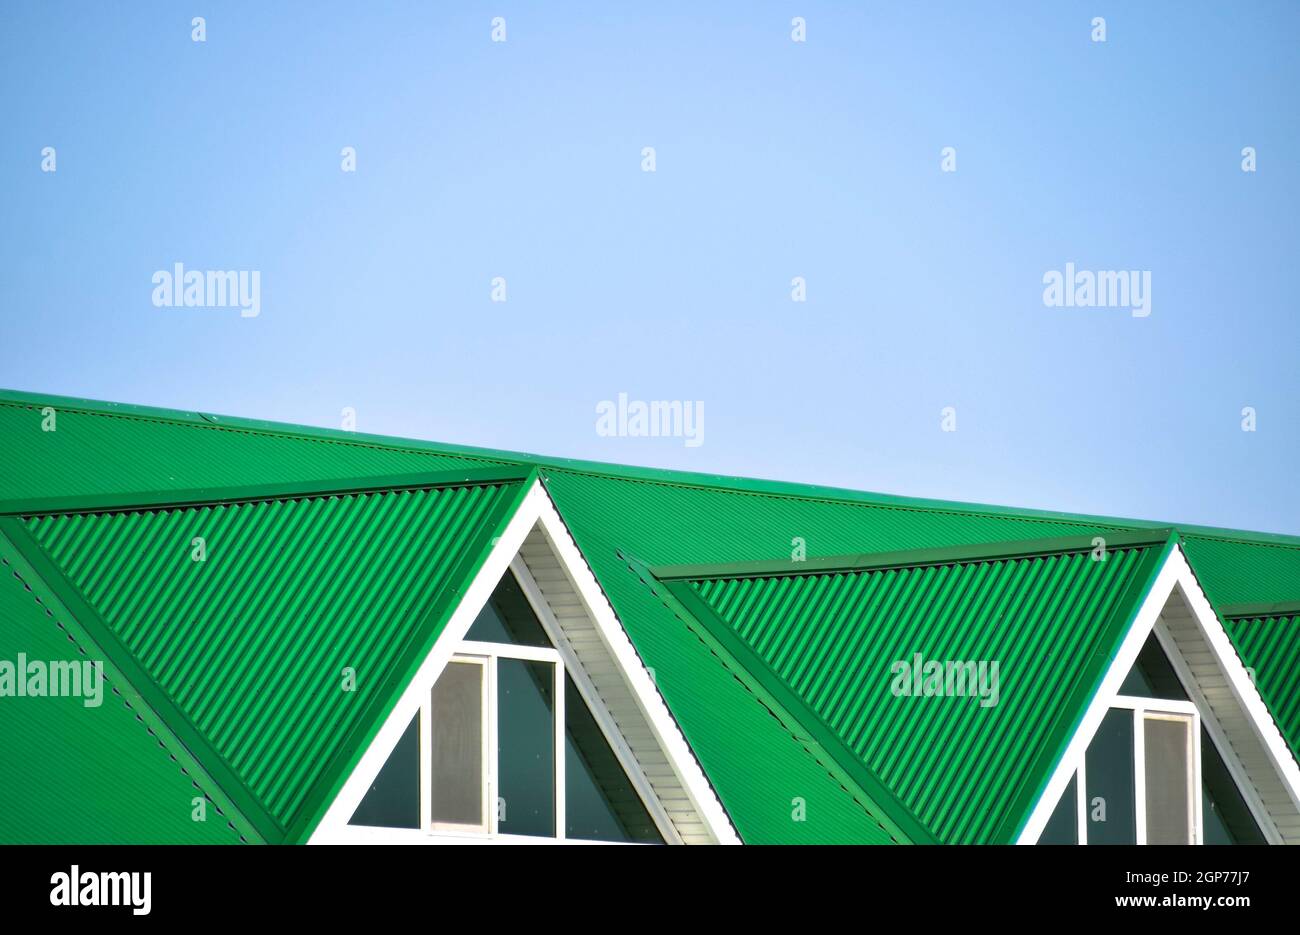 La maison avec des fenêtres en plastique et un toit vert de tôle ondulée.  Toiture de profil métallique de forme ondulée sur la maison avec des  fenêtres en plastique Photo Stock -